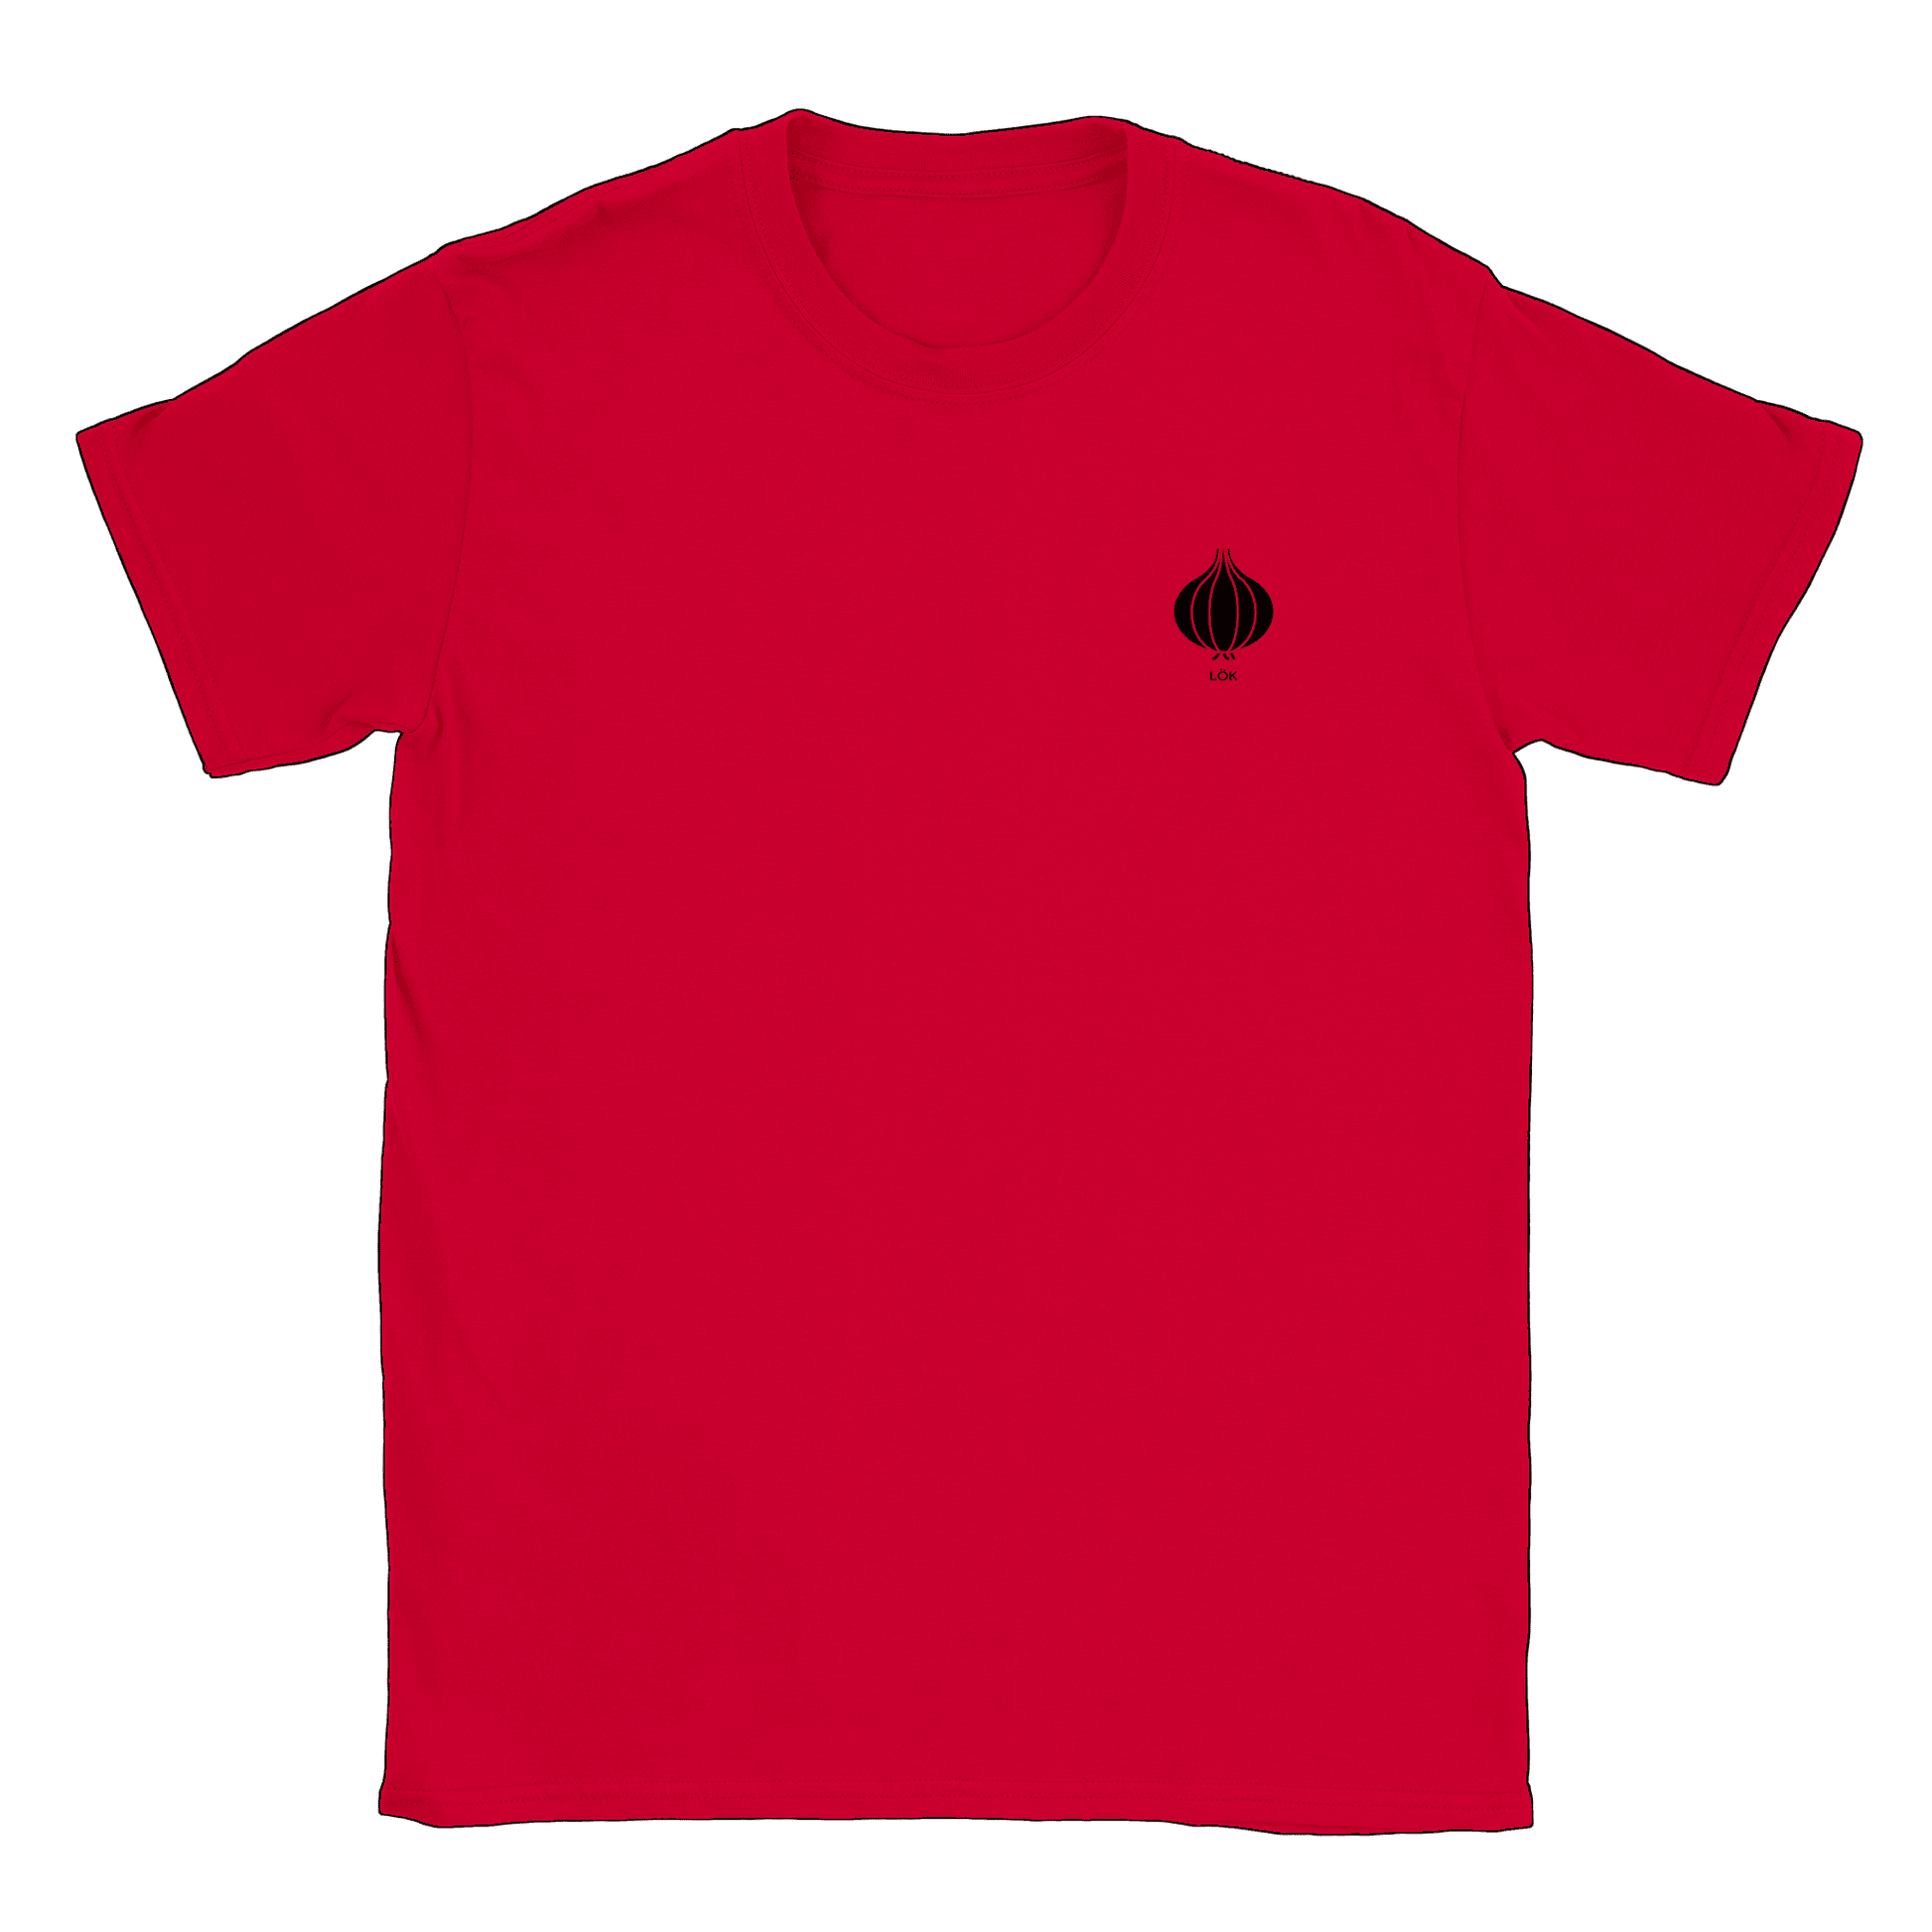 Lök liten - T-shirt Röd